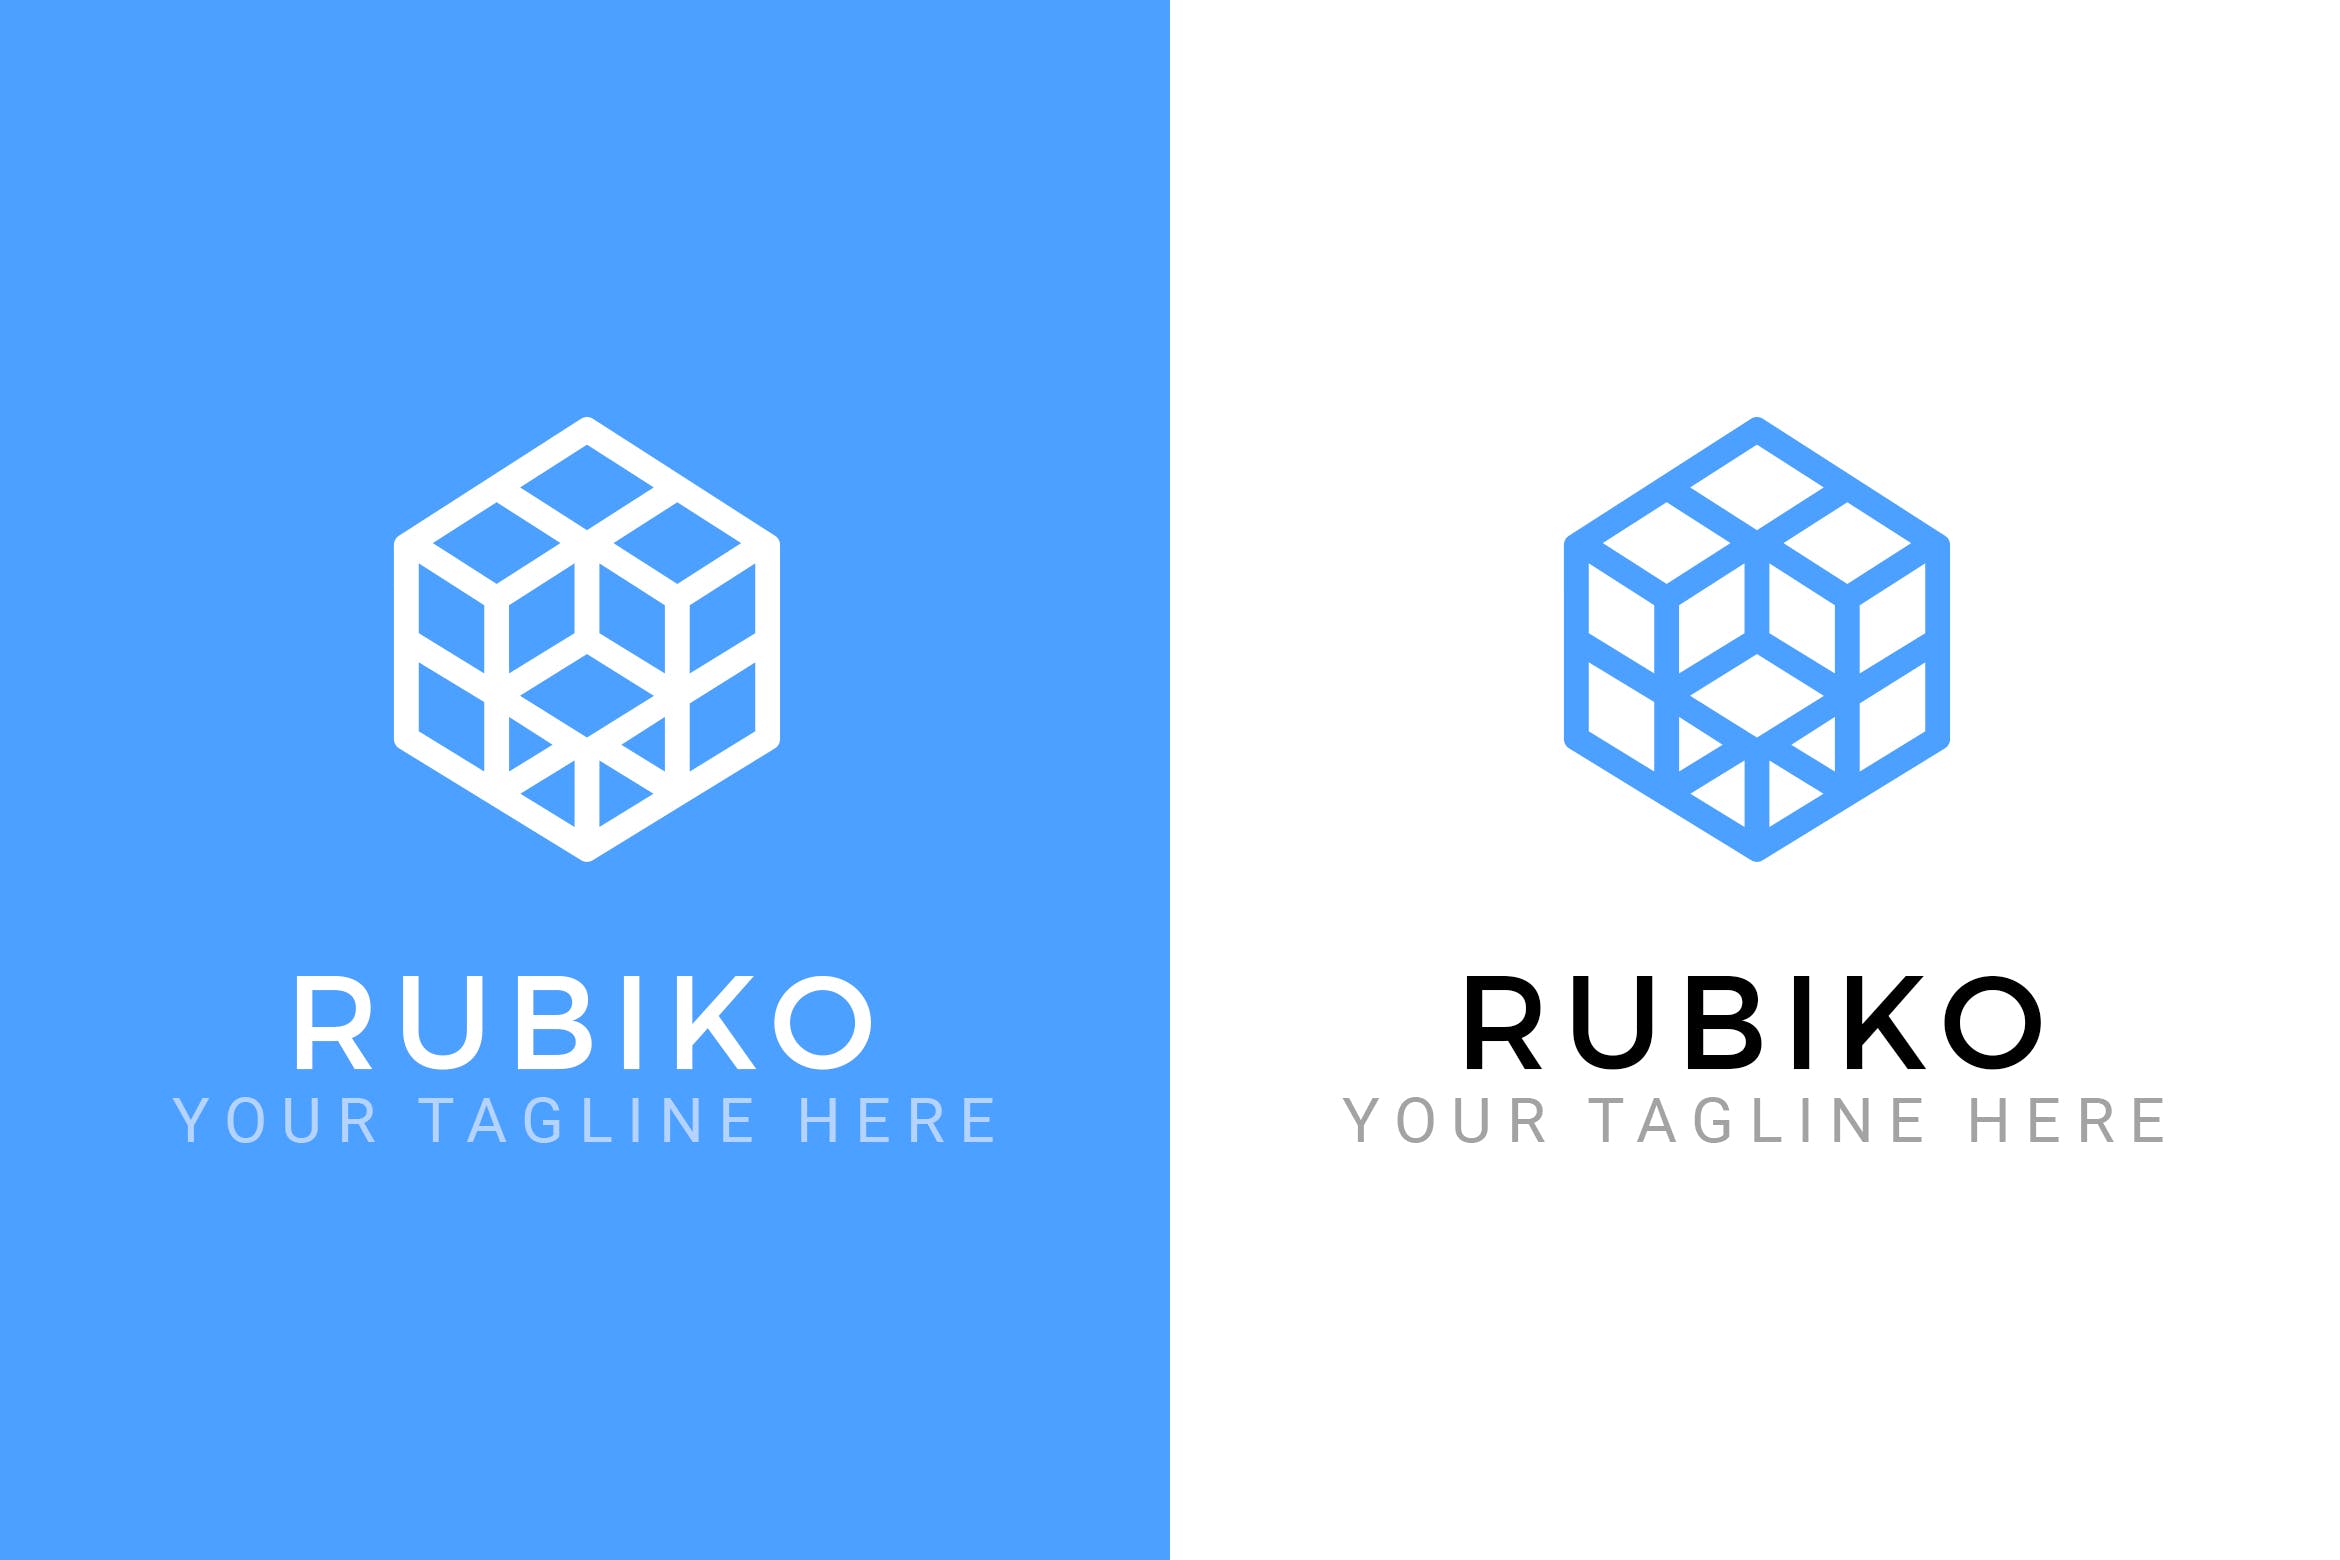 抽象魔方立体图形Logo设计蚂蚁素材精选模板 Rubiko – Abstract Logo Template插图